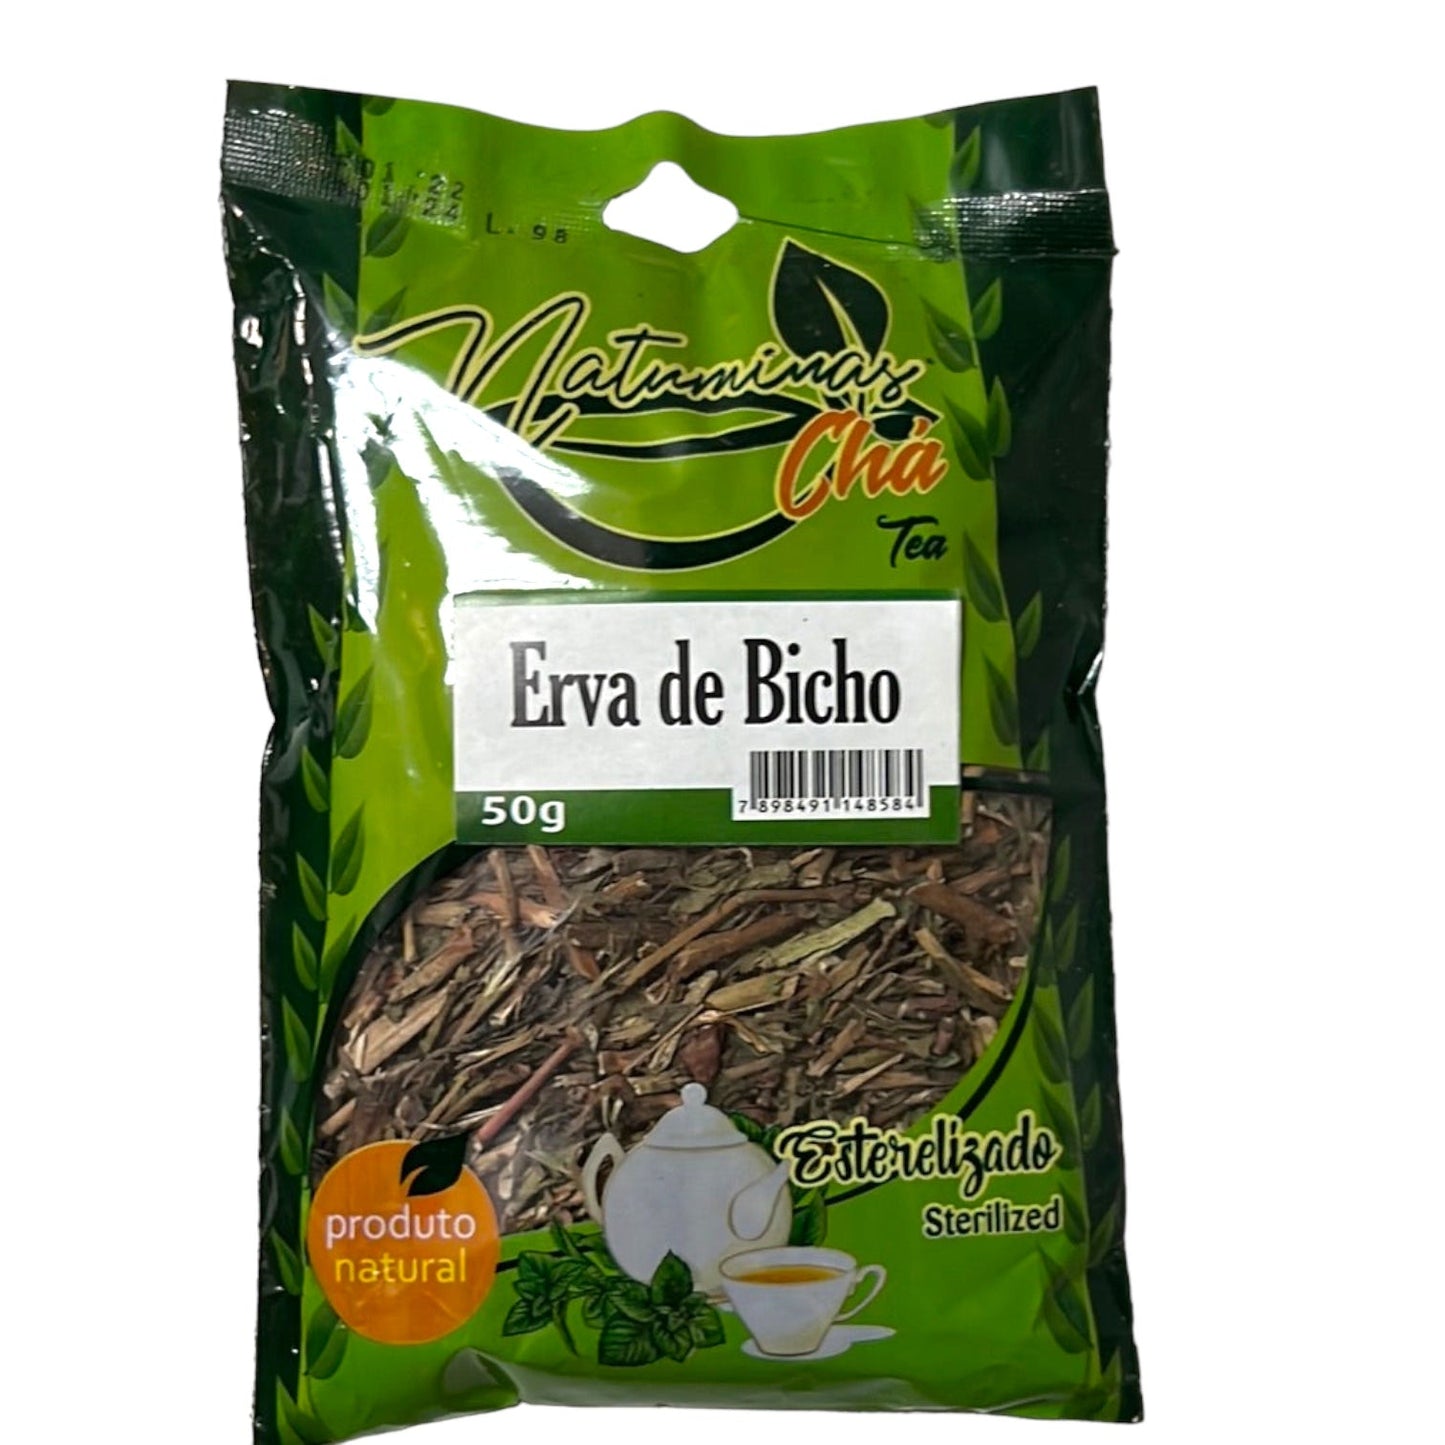 Natuminas Chá de Erva de Bicho 50g